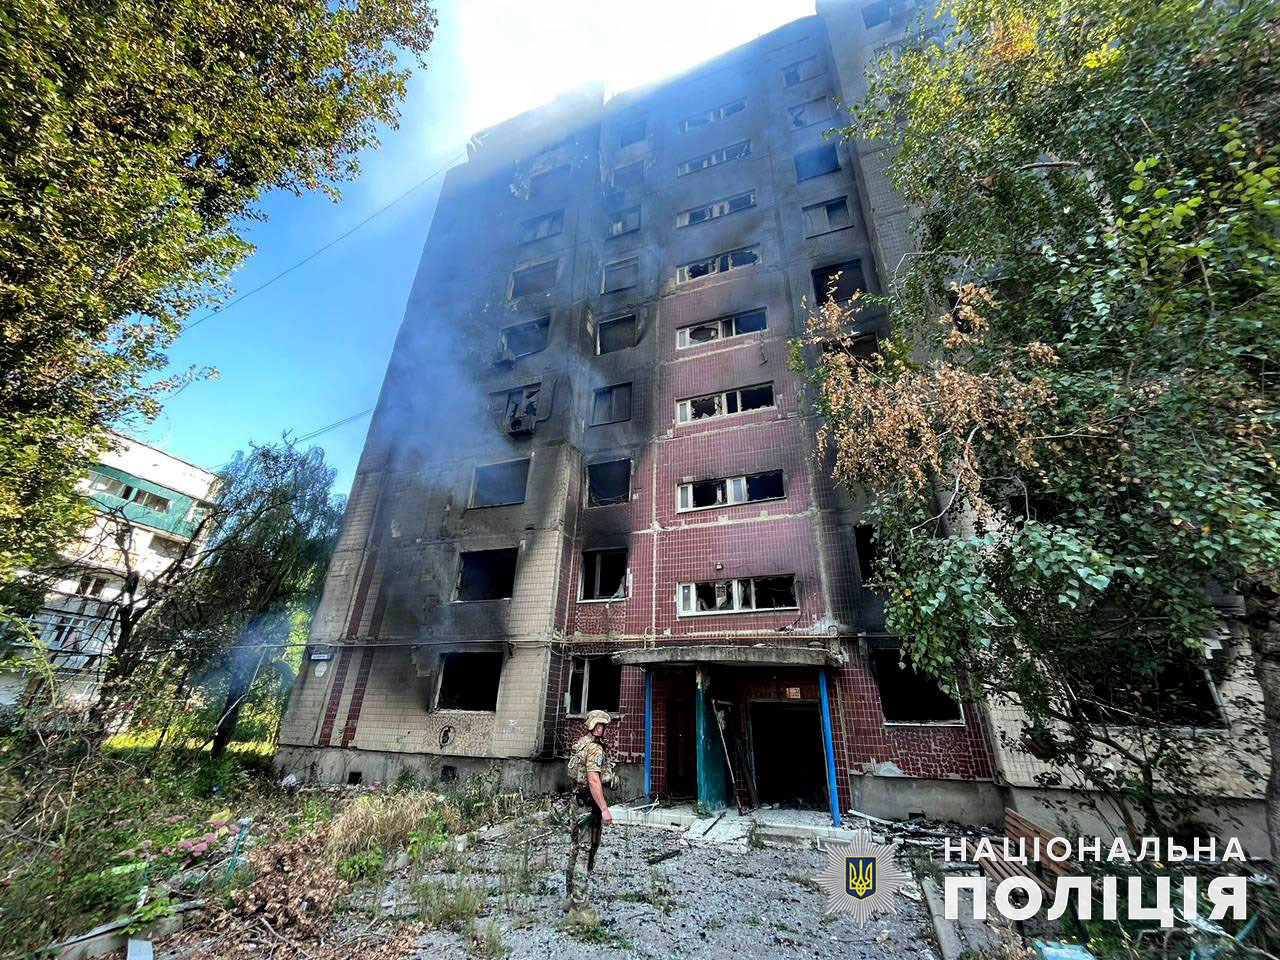 Дев’ятиповерховий будинок, який зруйнували росіяни 18 вересня